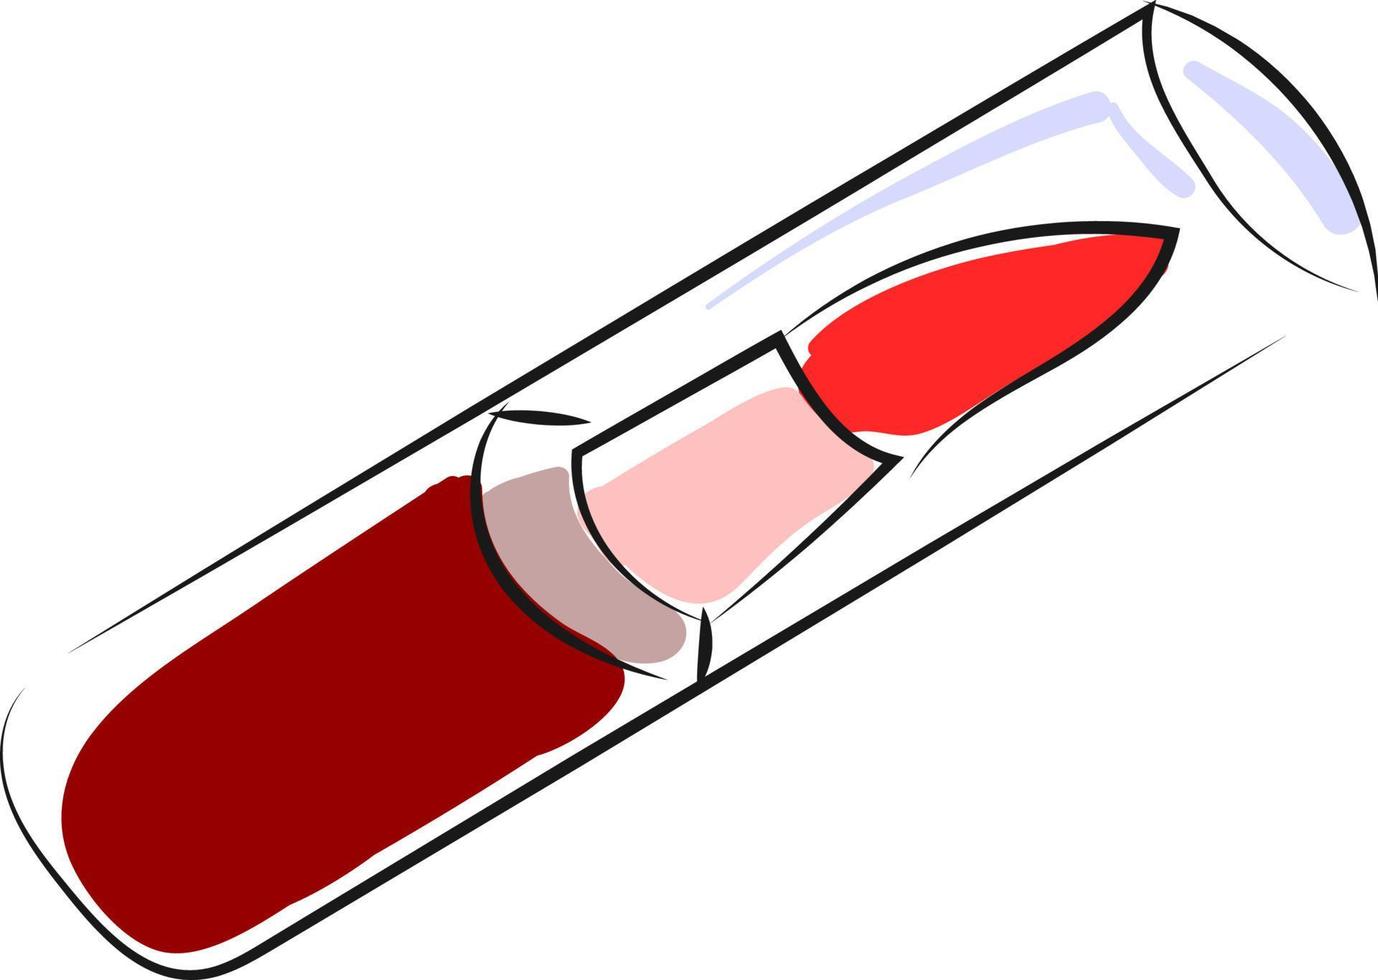 röd läppstift, illustration, vektor på vit bakgrund.